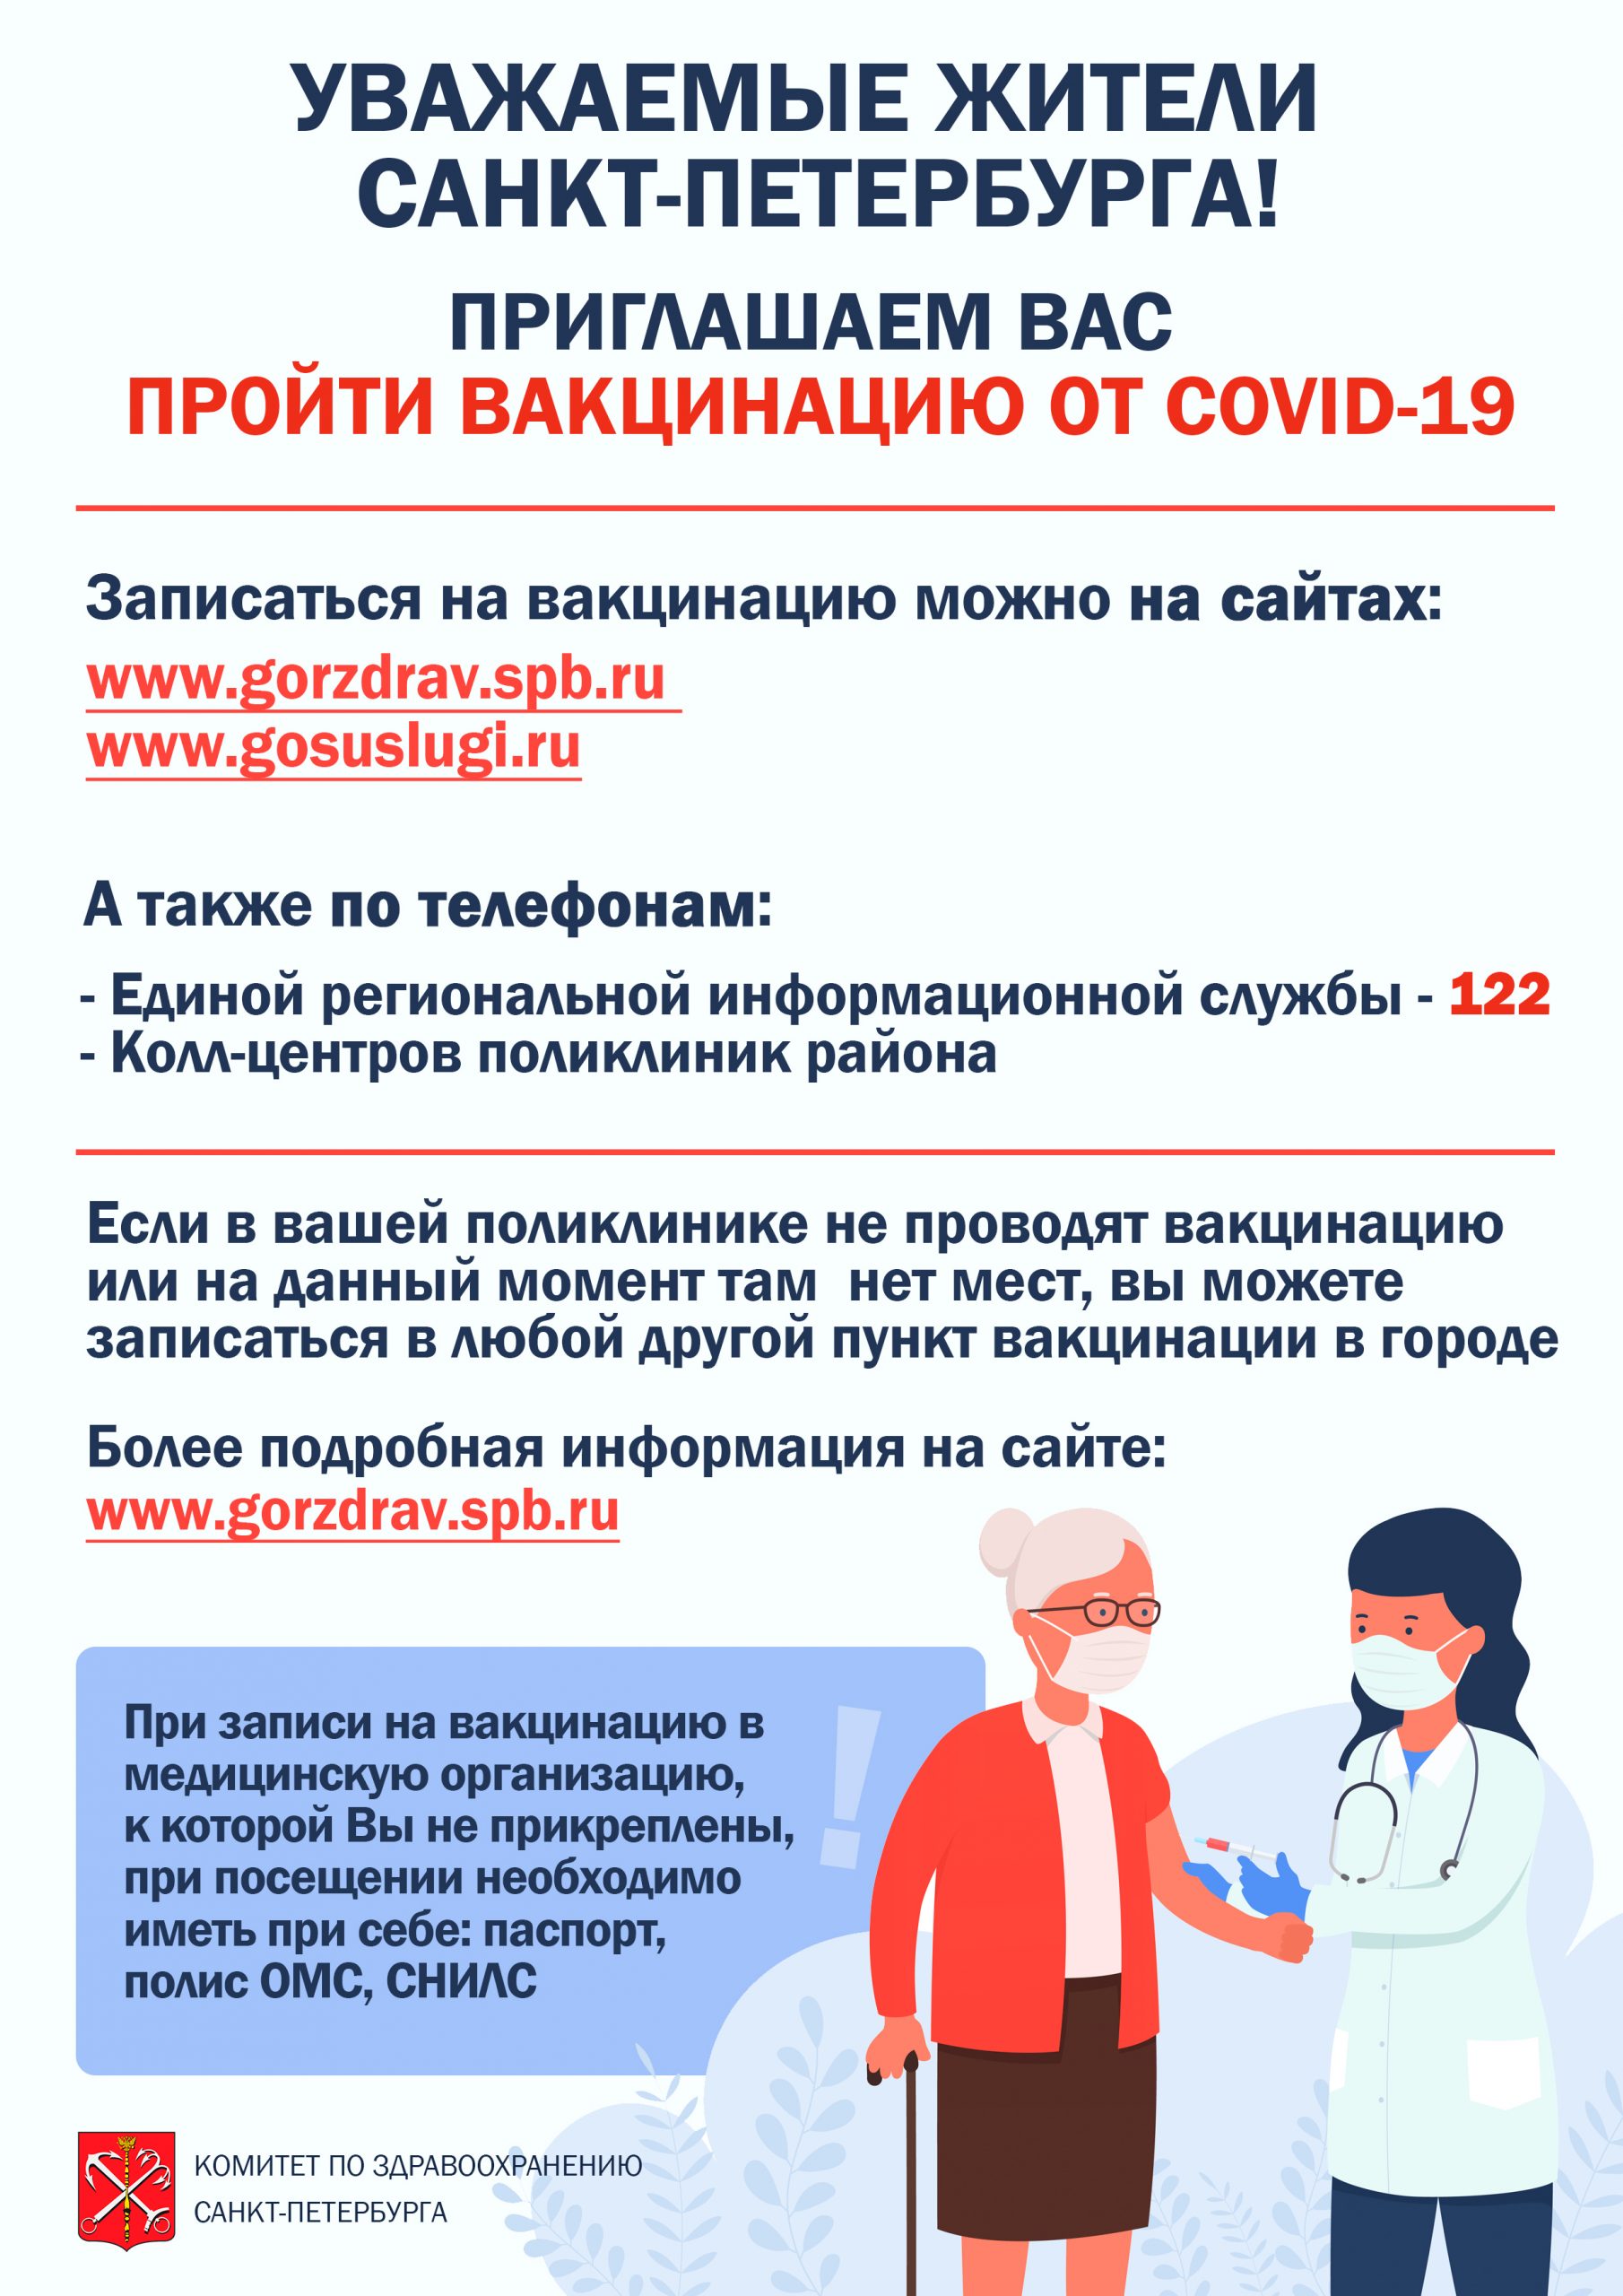 Комитет по здравоохранению Санкт-Петербурга приглашает